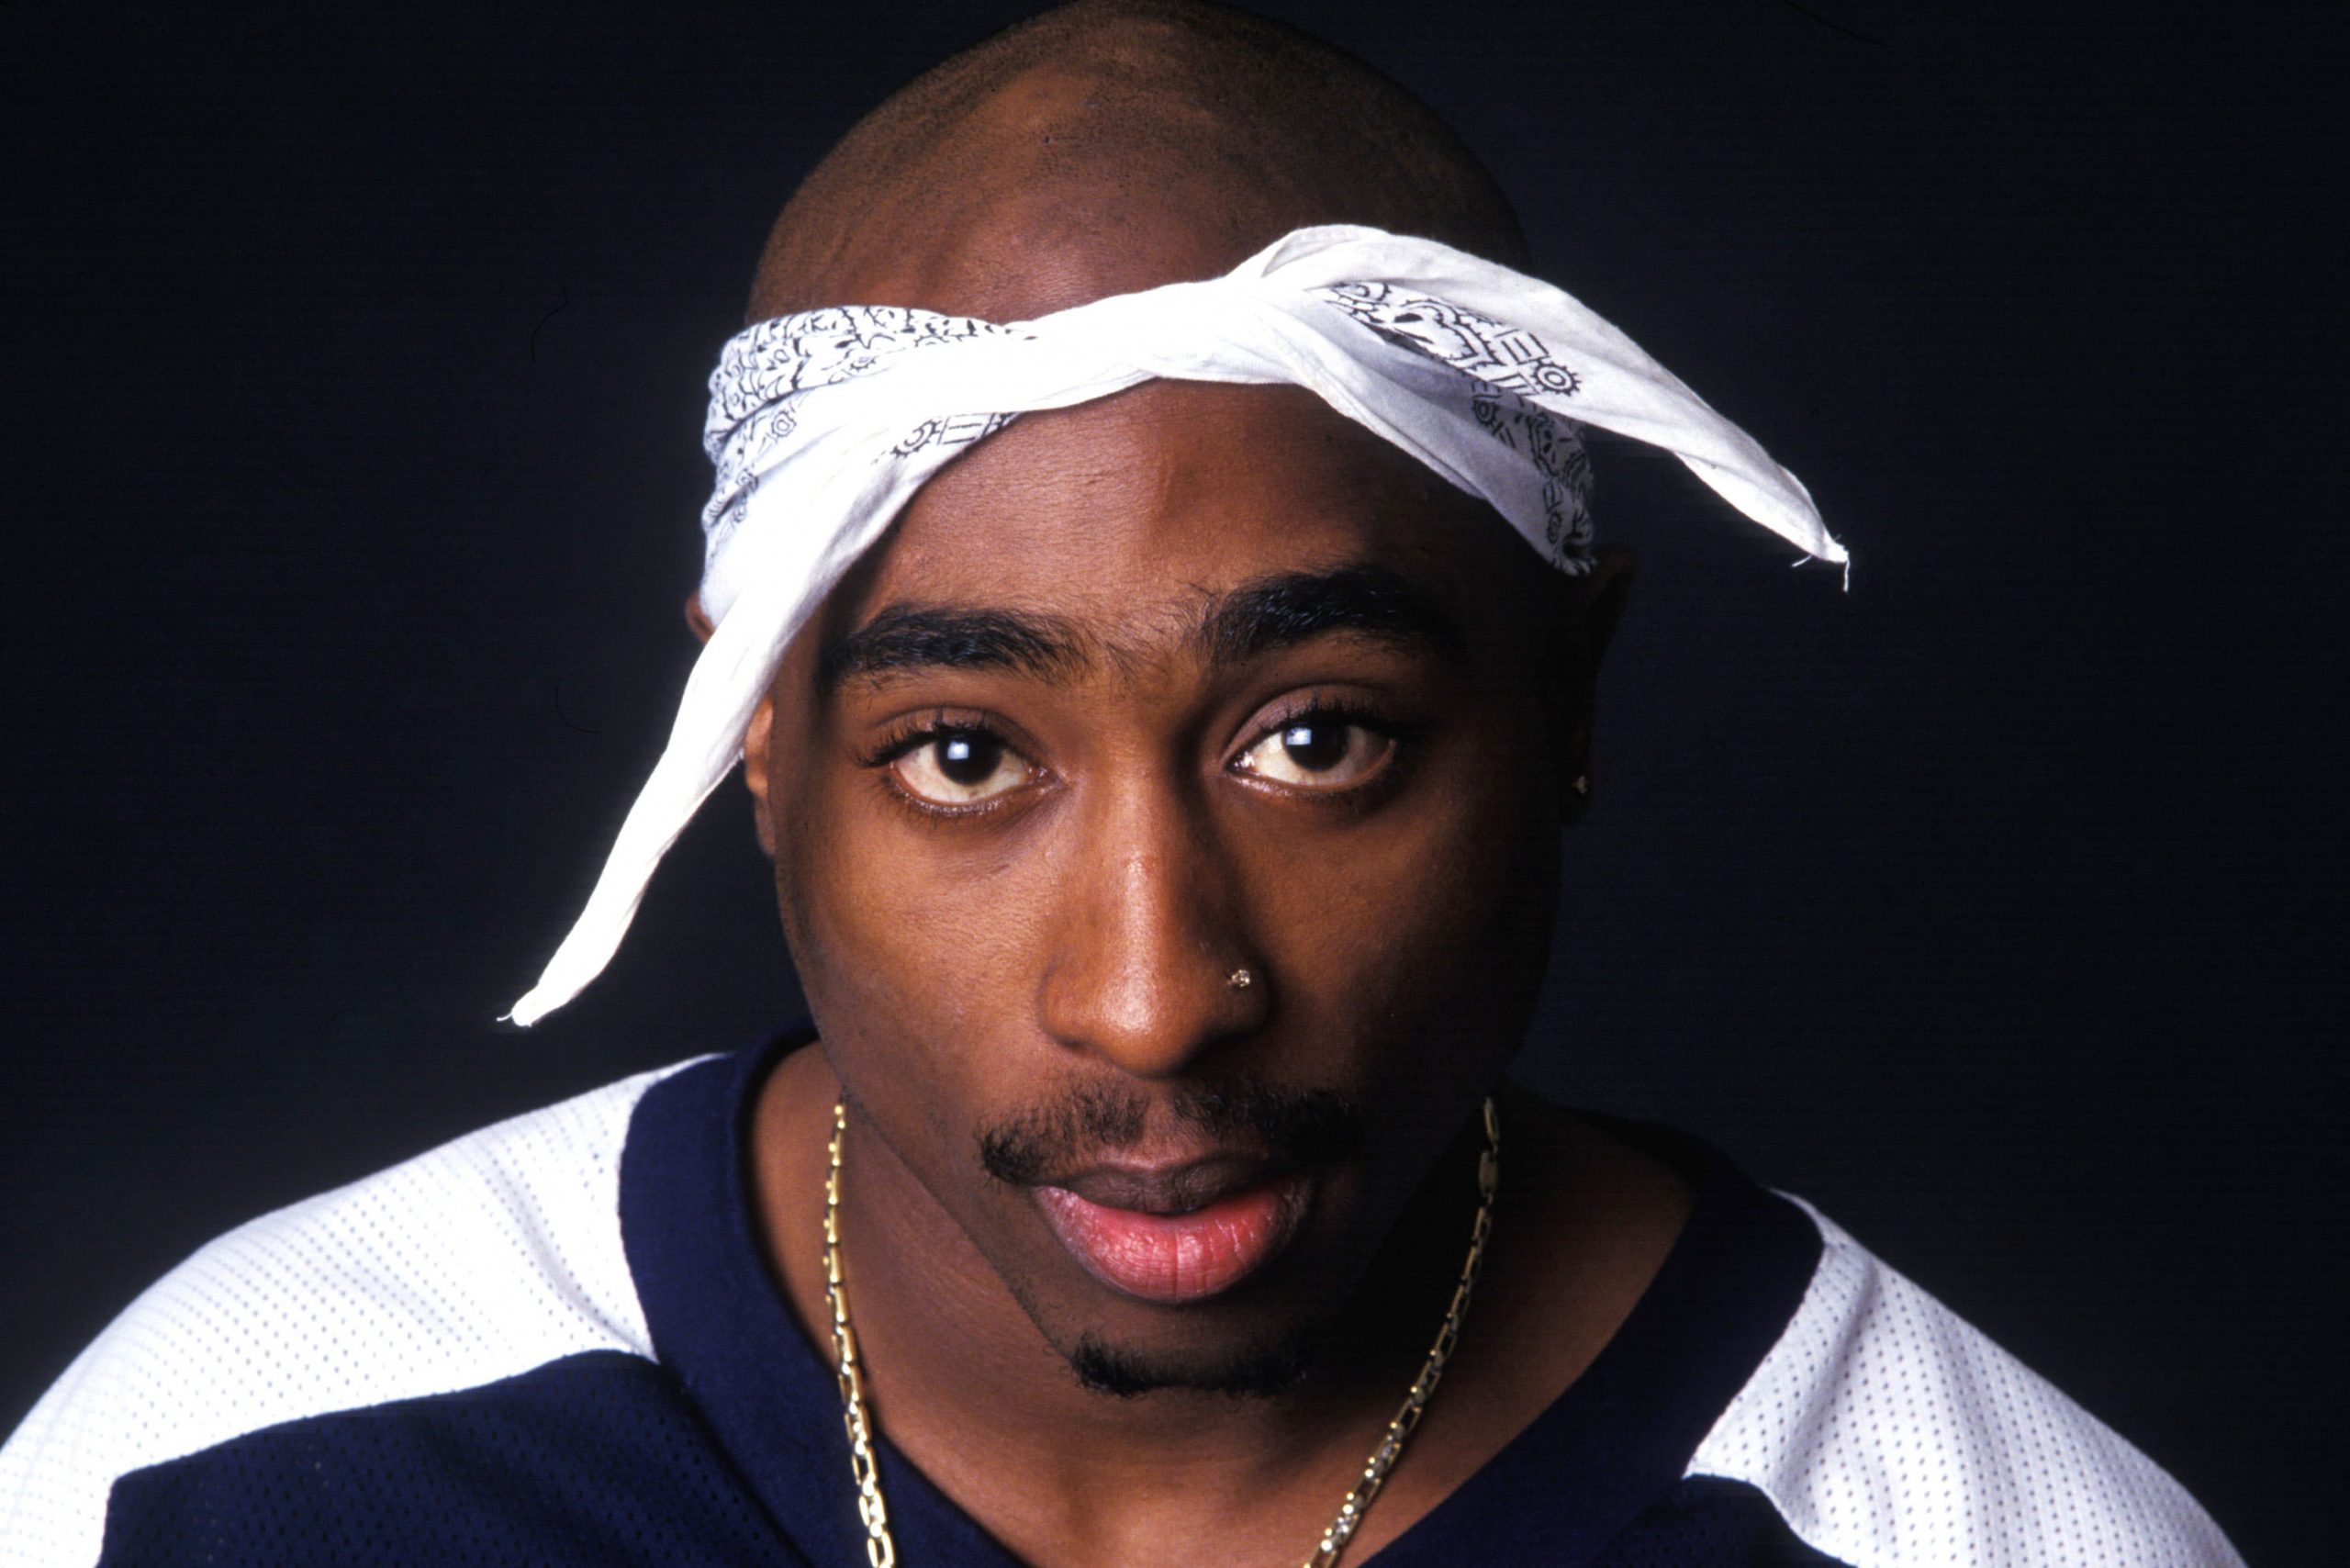 Tupac Shakur Wallpaper, Hip hop, actor, rapper, 2Pac, portrait